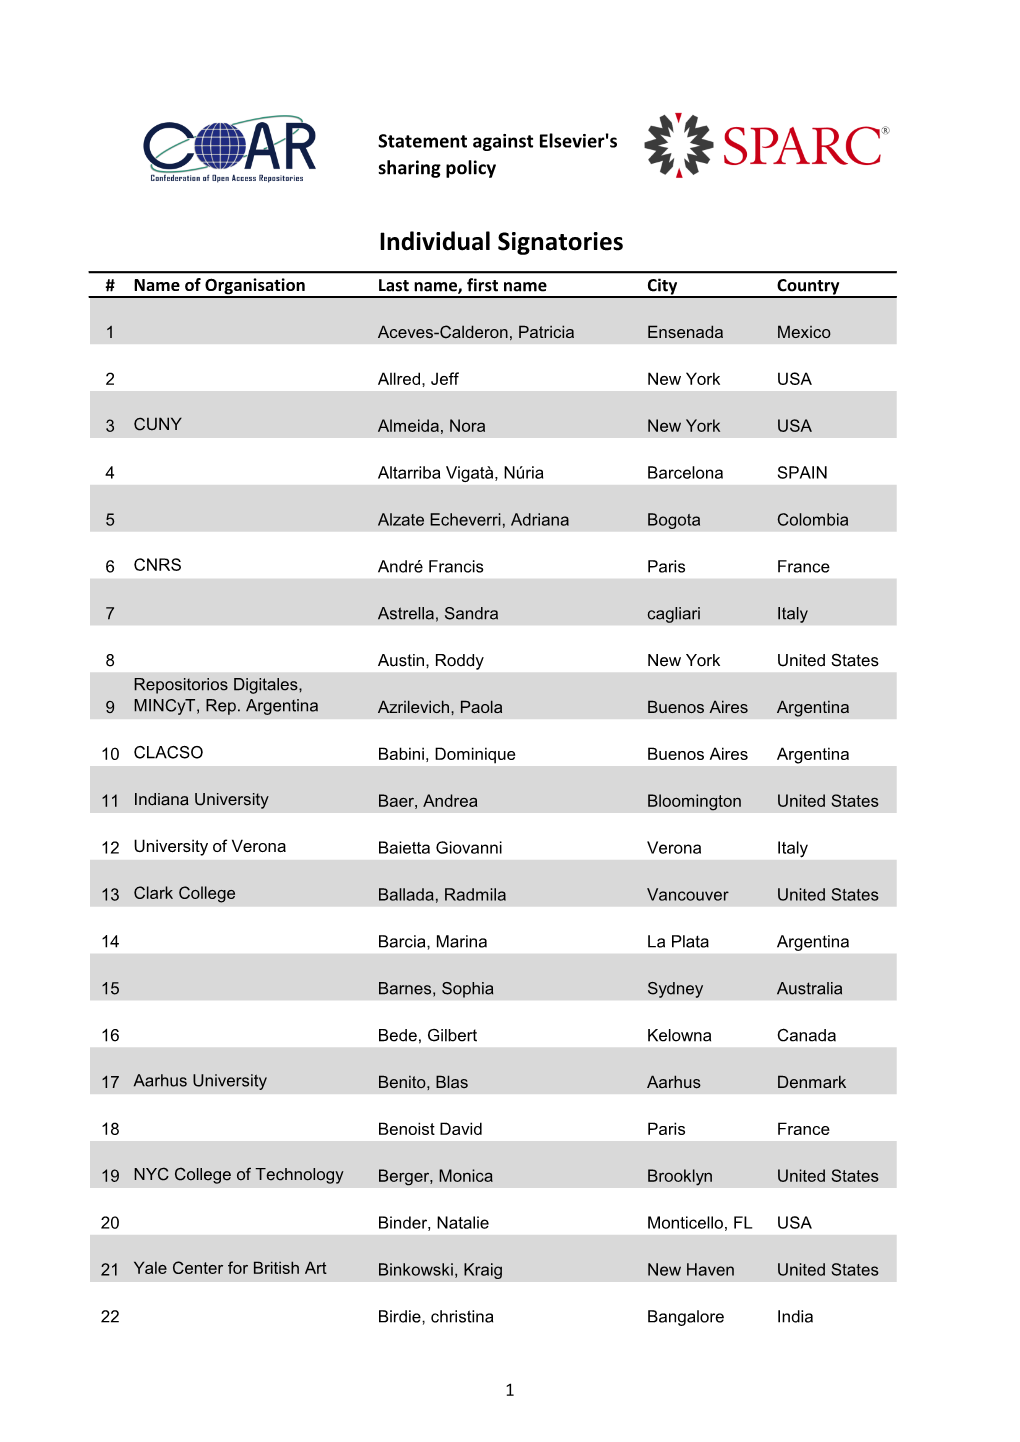 Individual Signatories